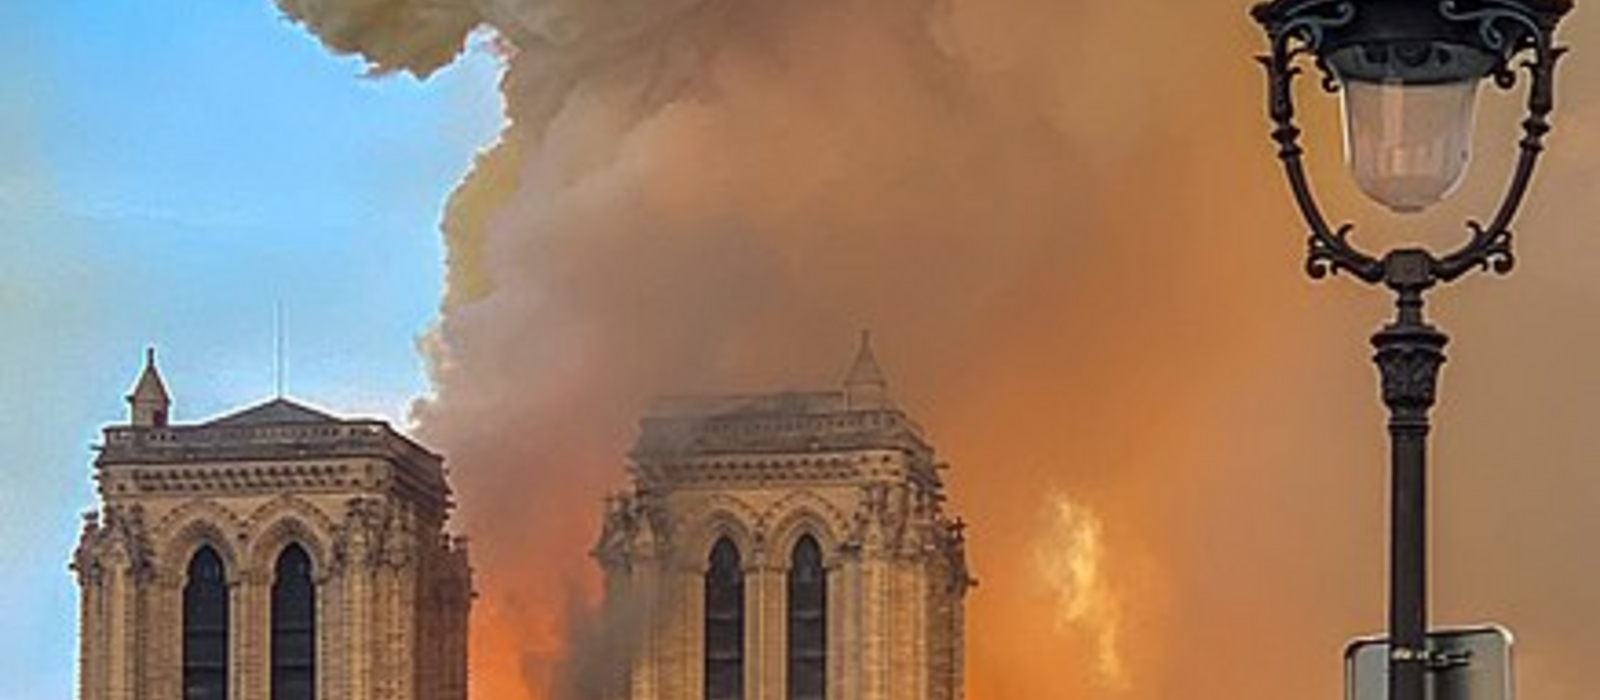 Baulicher Brandschutz in Kirchen